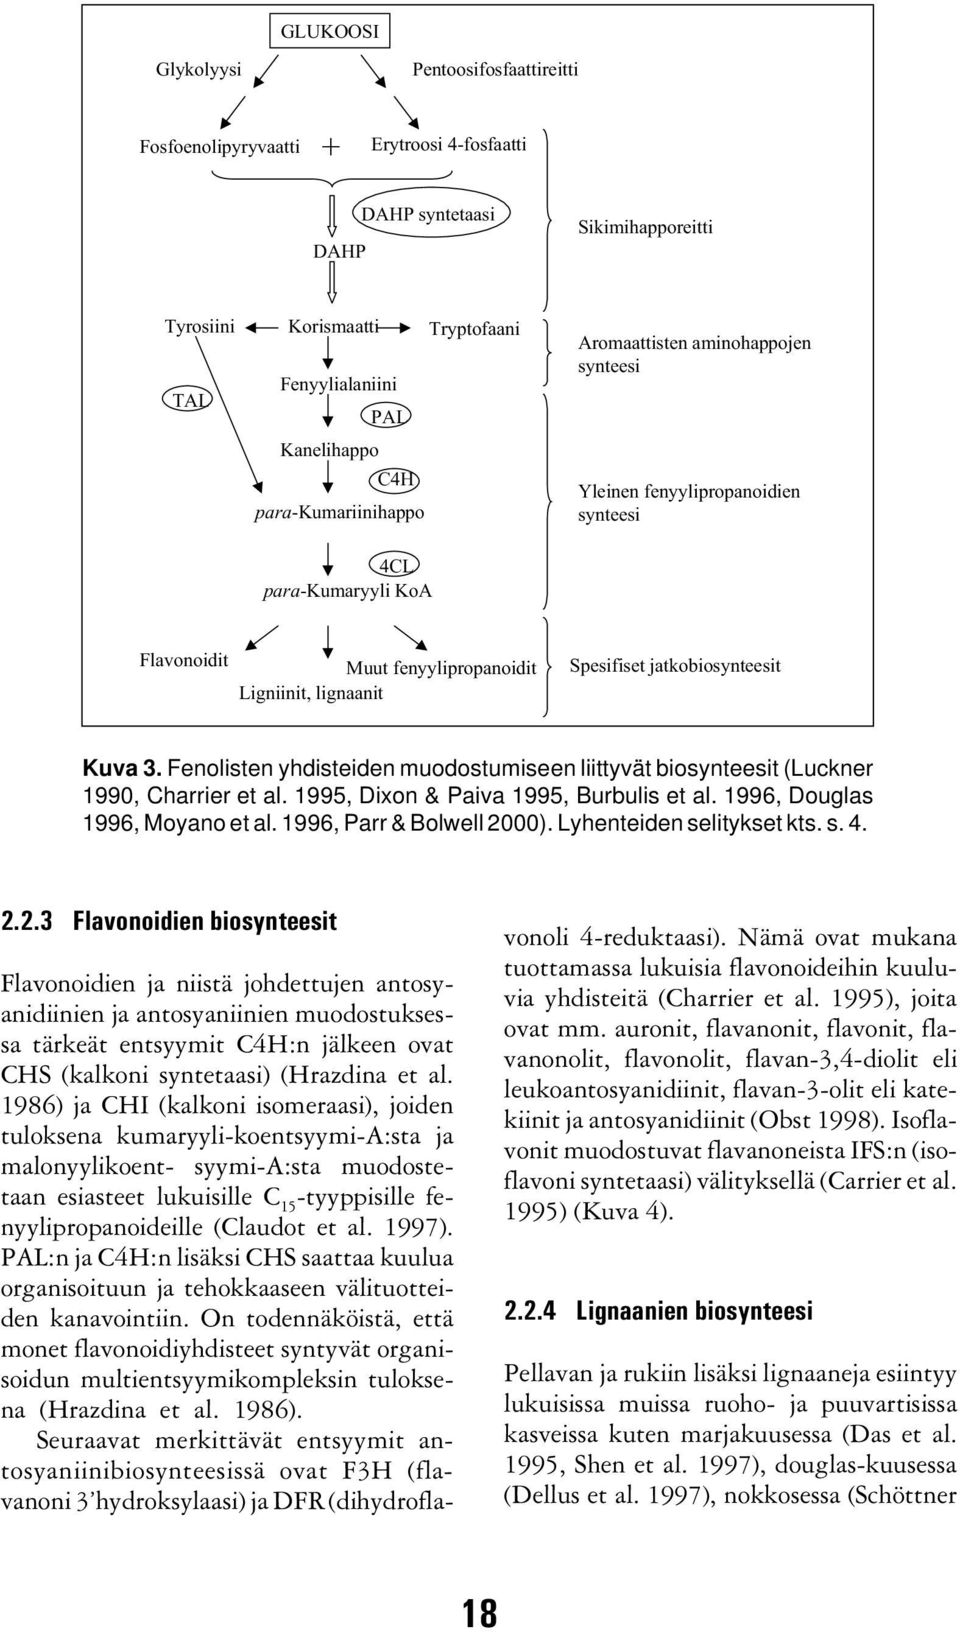 jatkobiosynteesit Kuva 3. Fenolisten yhdisteiden muodostumiseen liittyvät biosynteesit (Luckner 1990, Charrier et al. 1995, Dixon & Paiva 1995, Burbulis et al. 1996, Douglas 1996, Moyano et al.